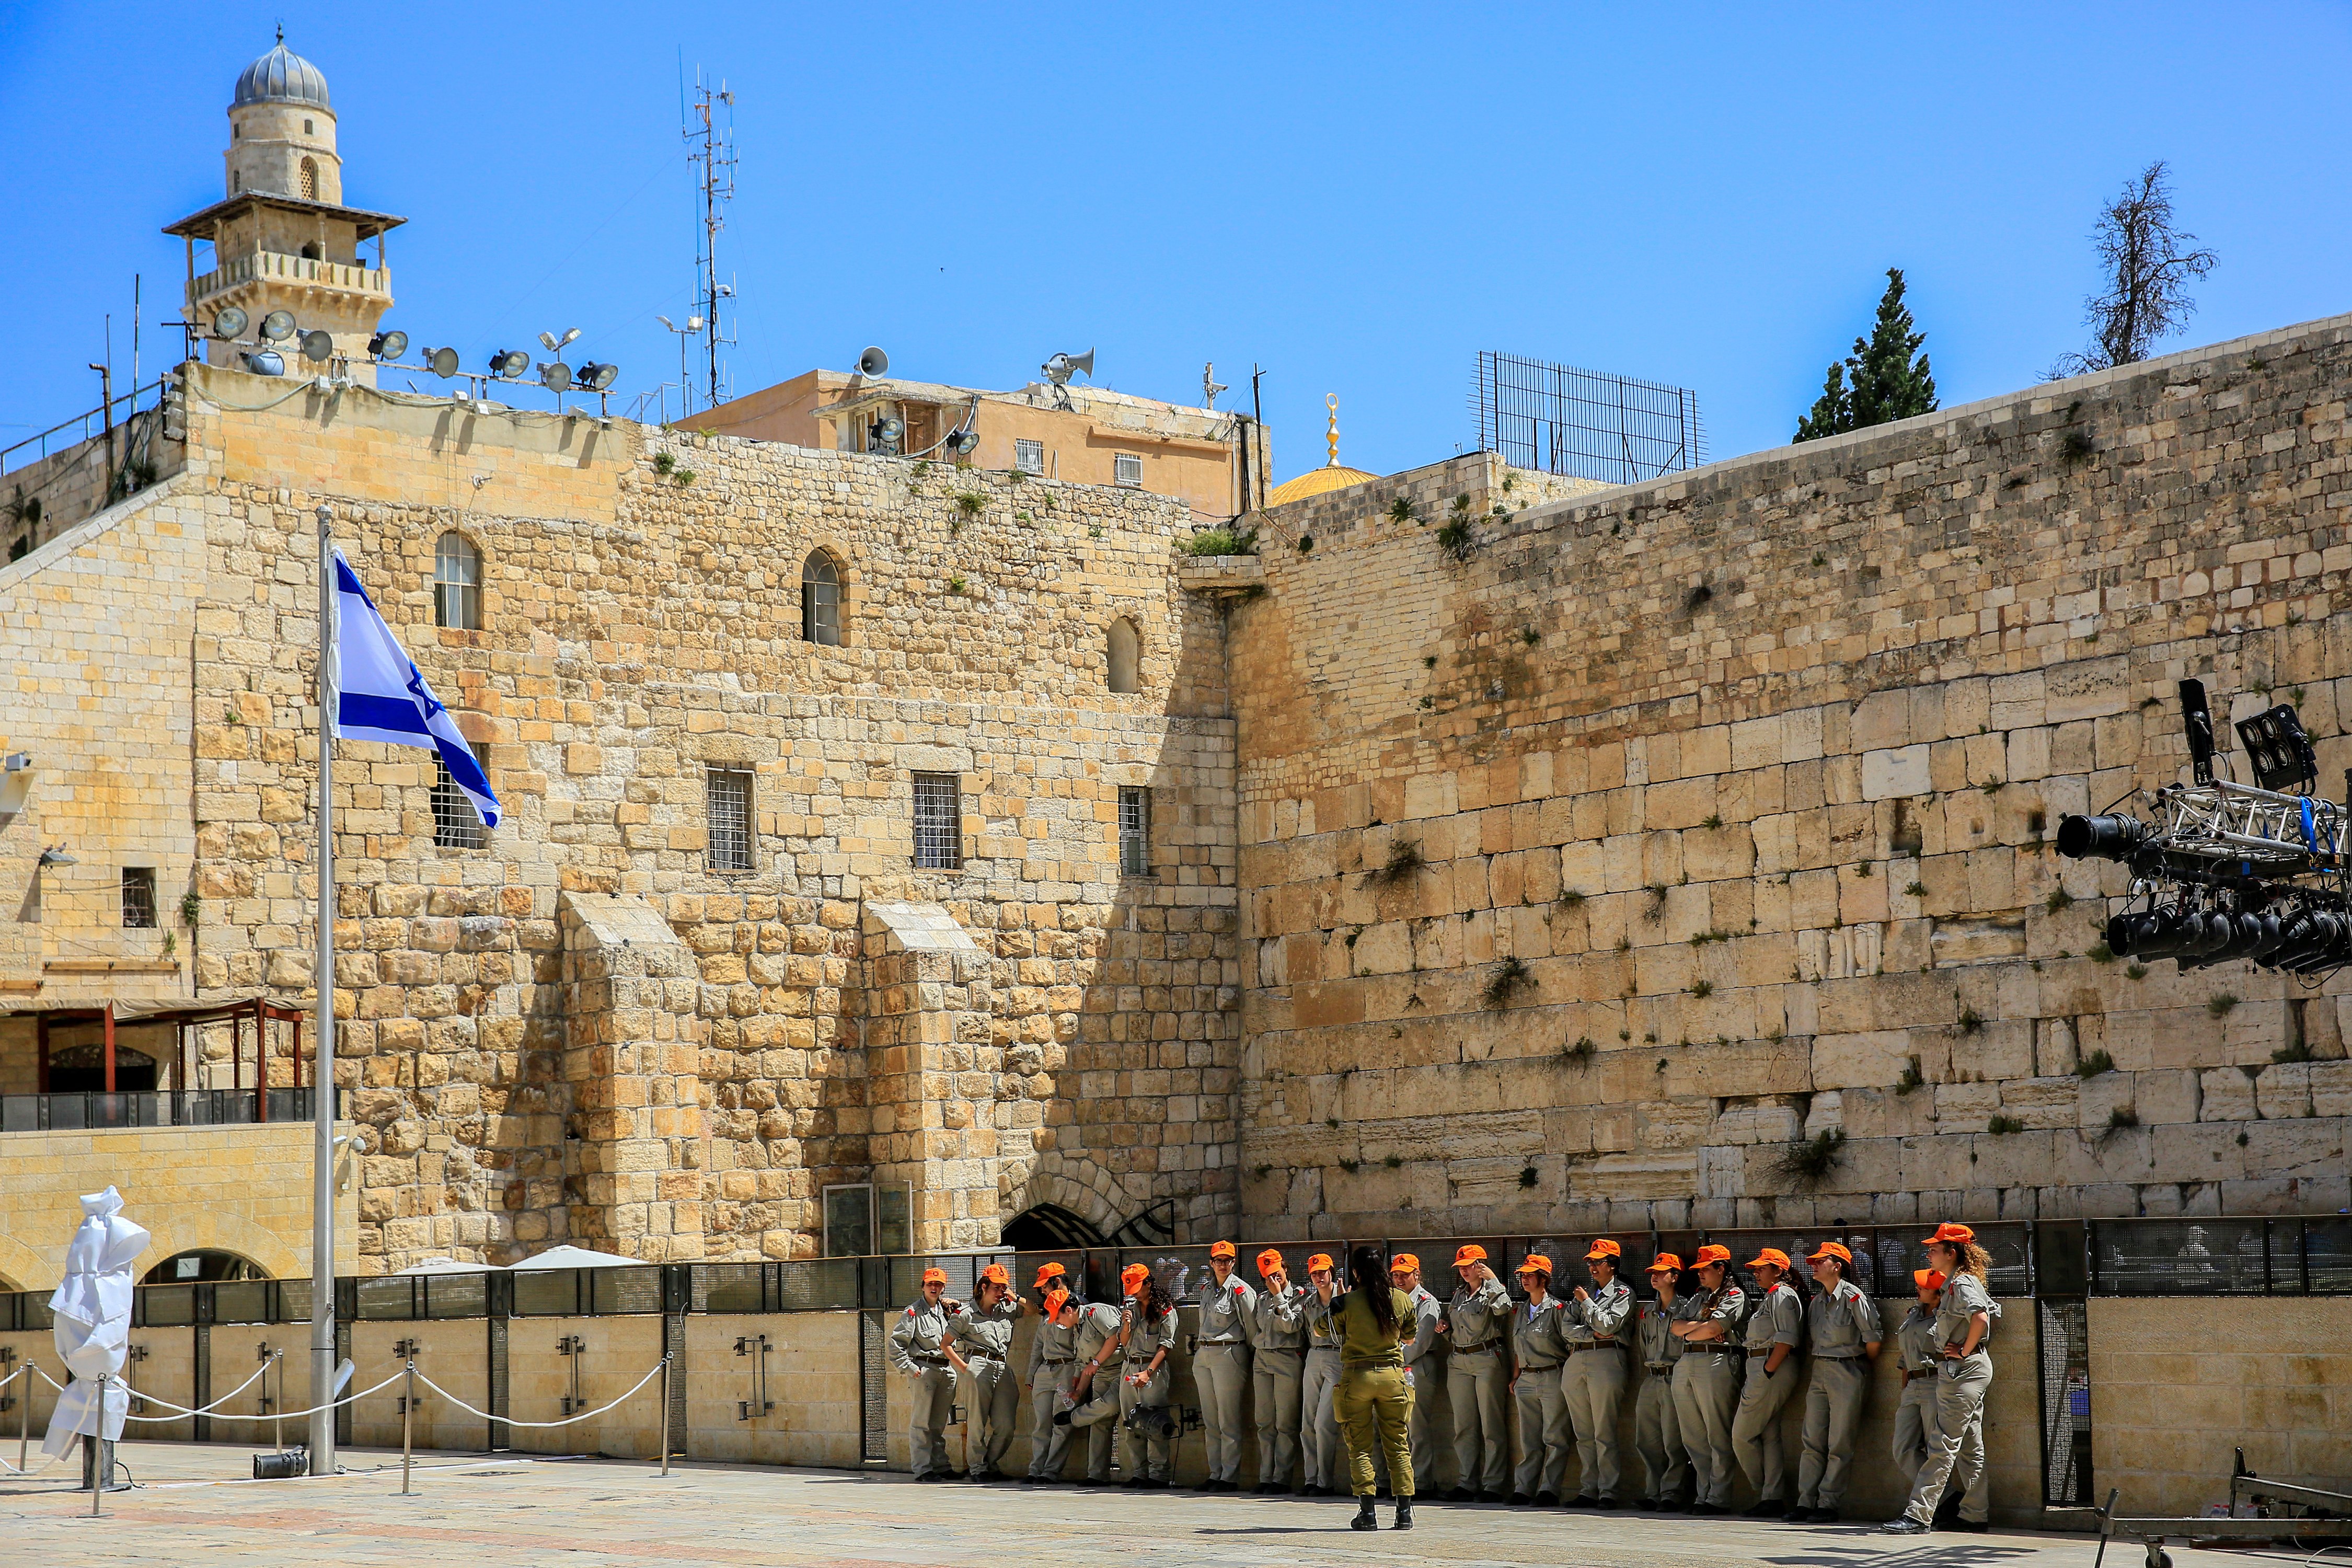 エルサレム 嘆きの壁 評判 案内 トリップドットコム